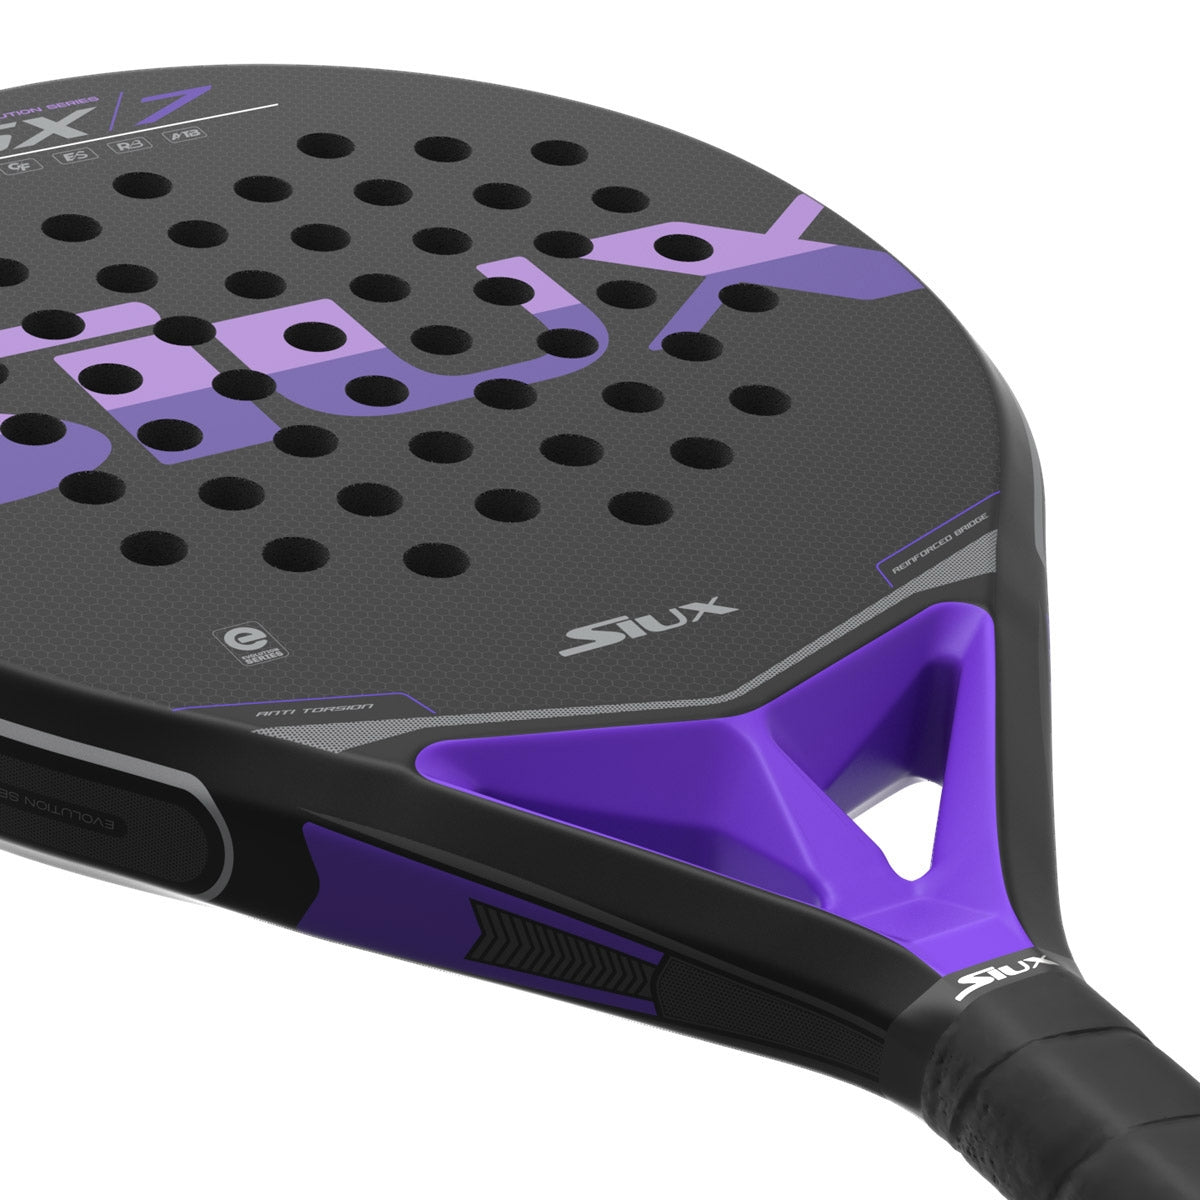 Siux SX7 Air padel racket